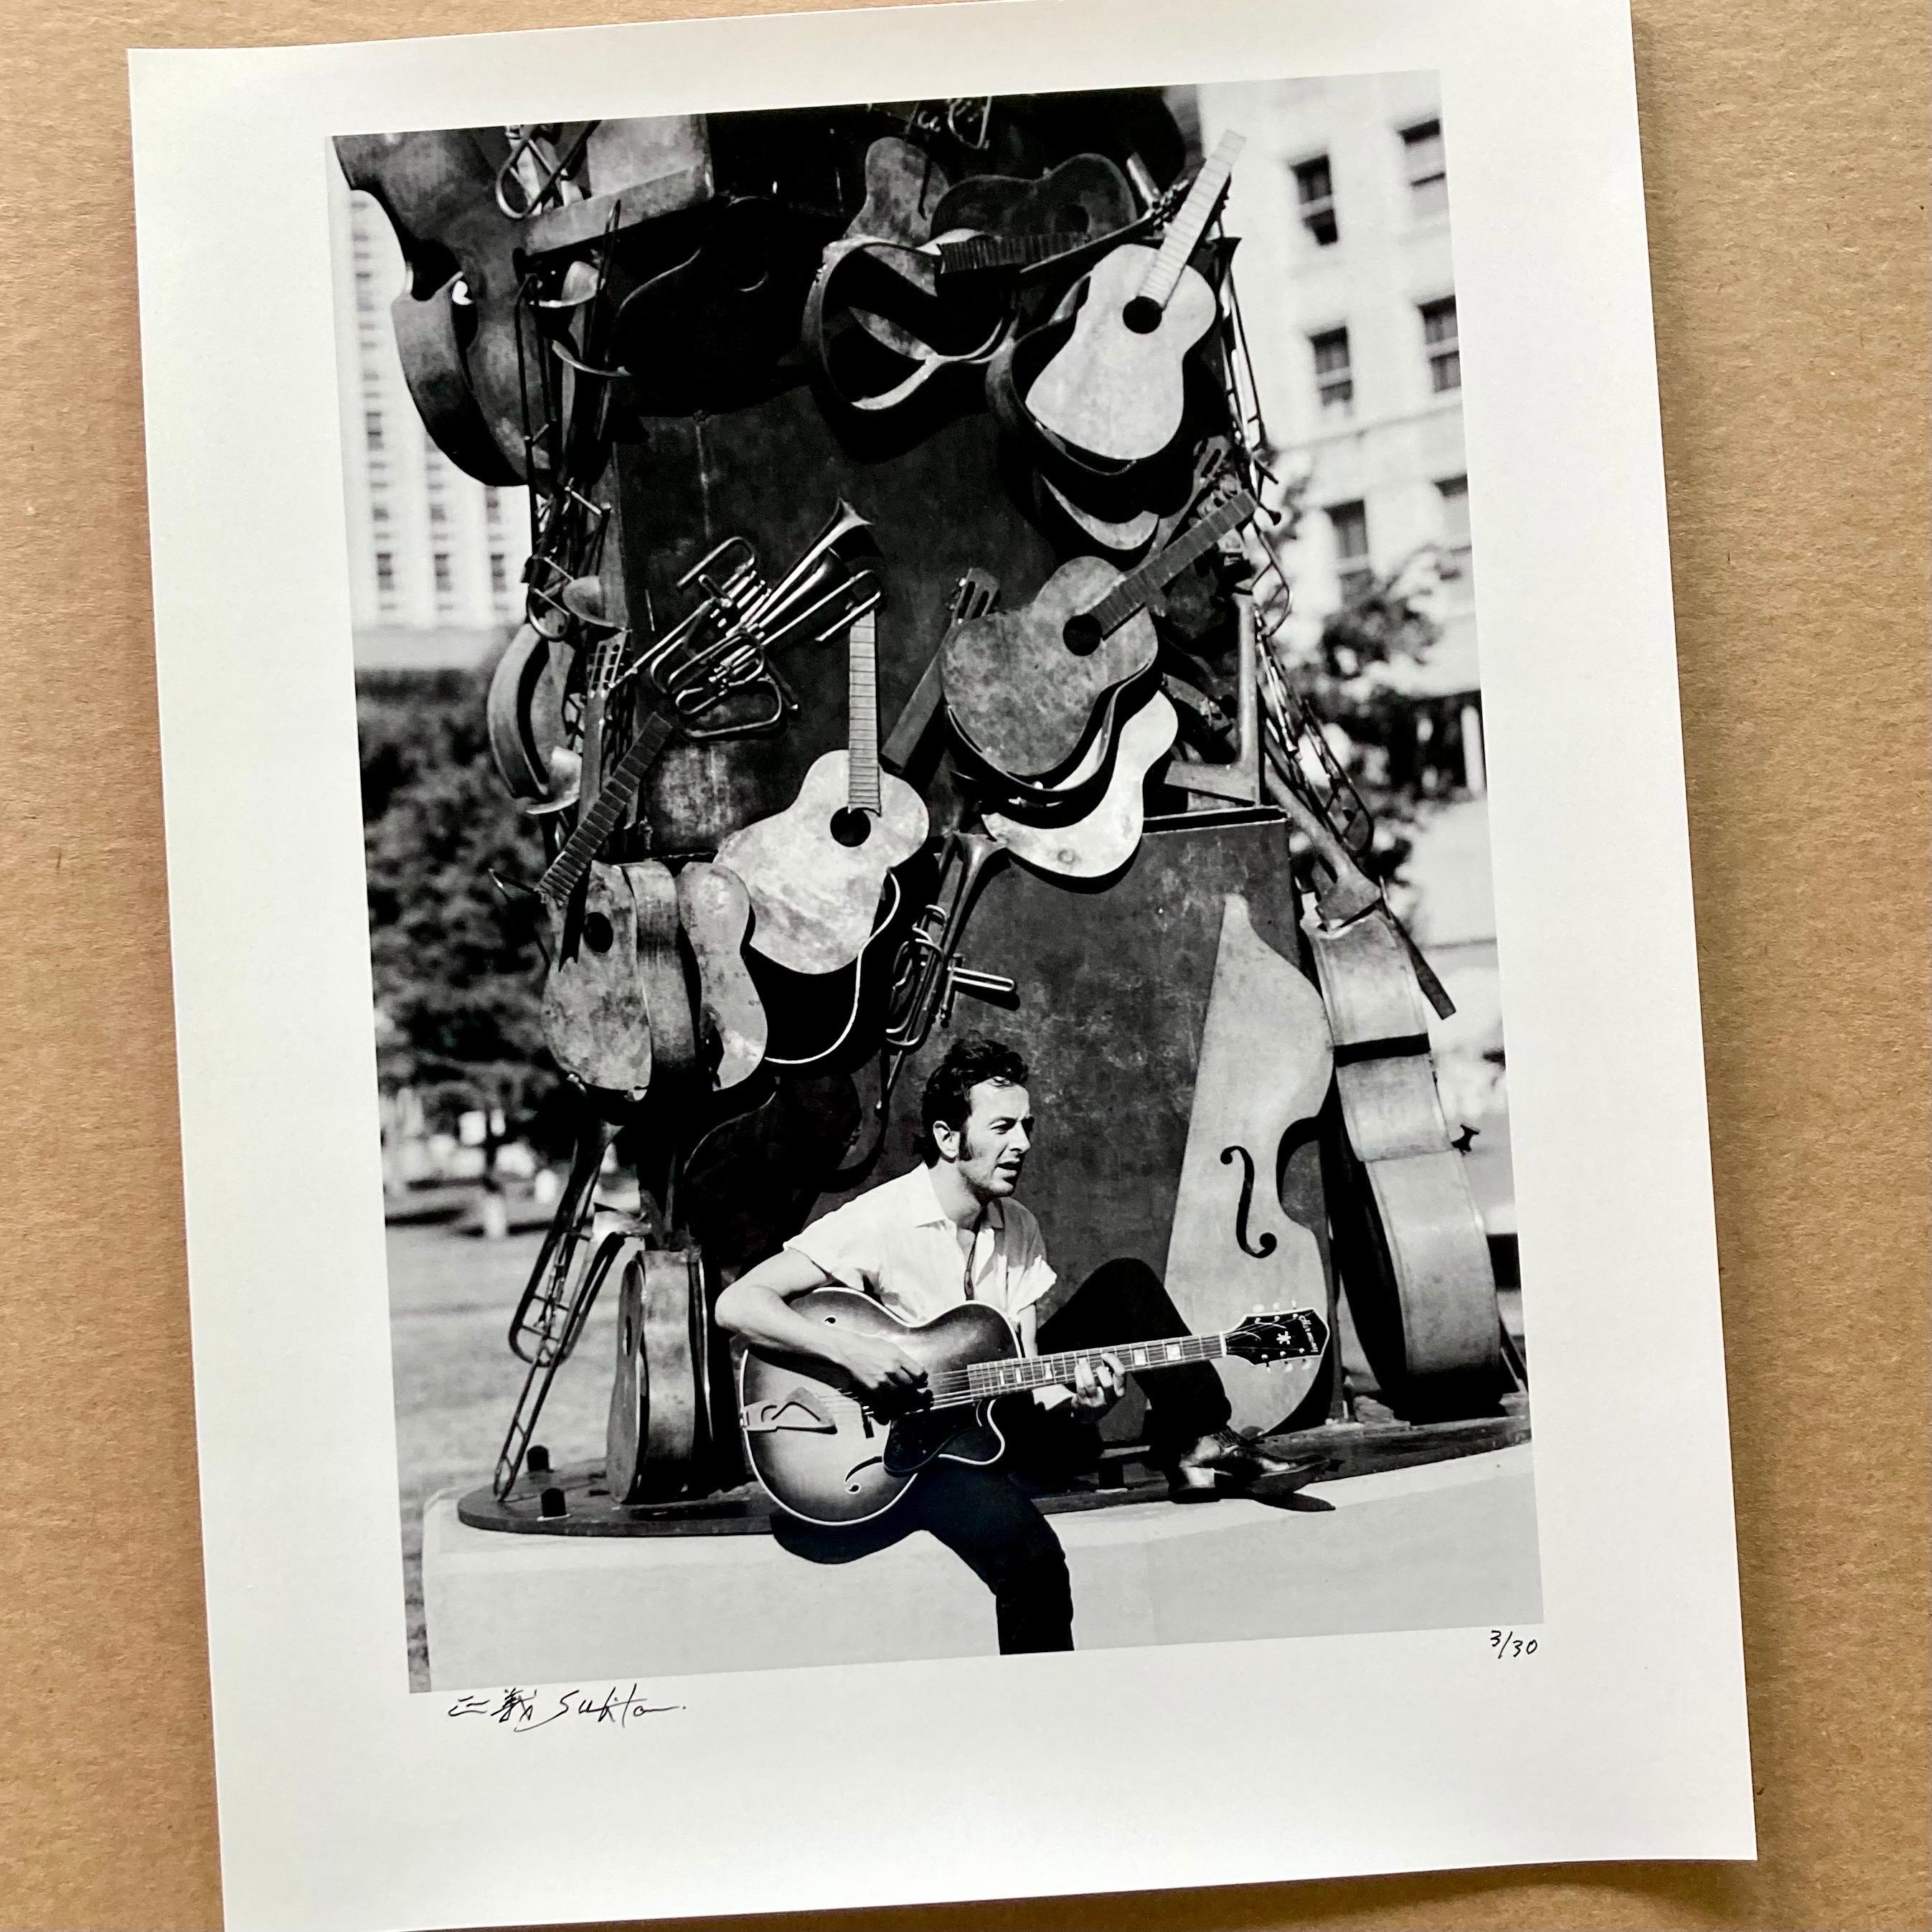 Joe Strummer of The Clash  - Photograph by Masayoshi Sukita